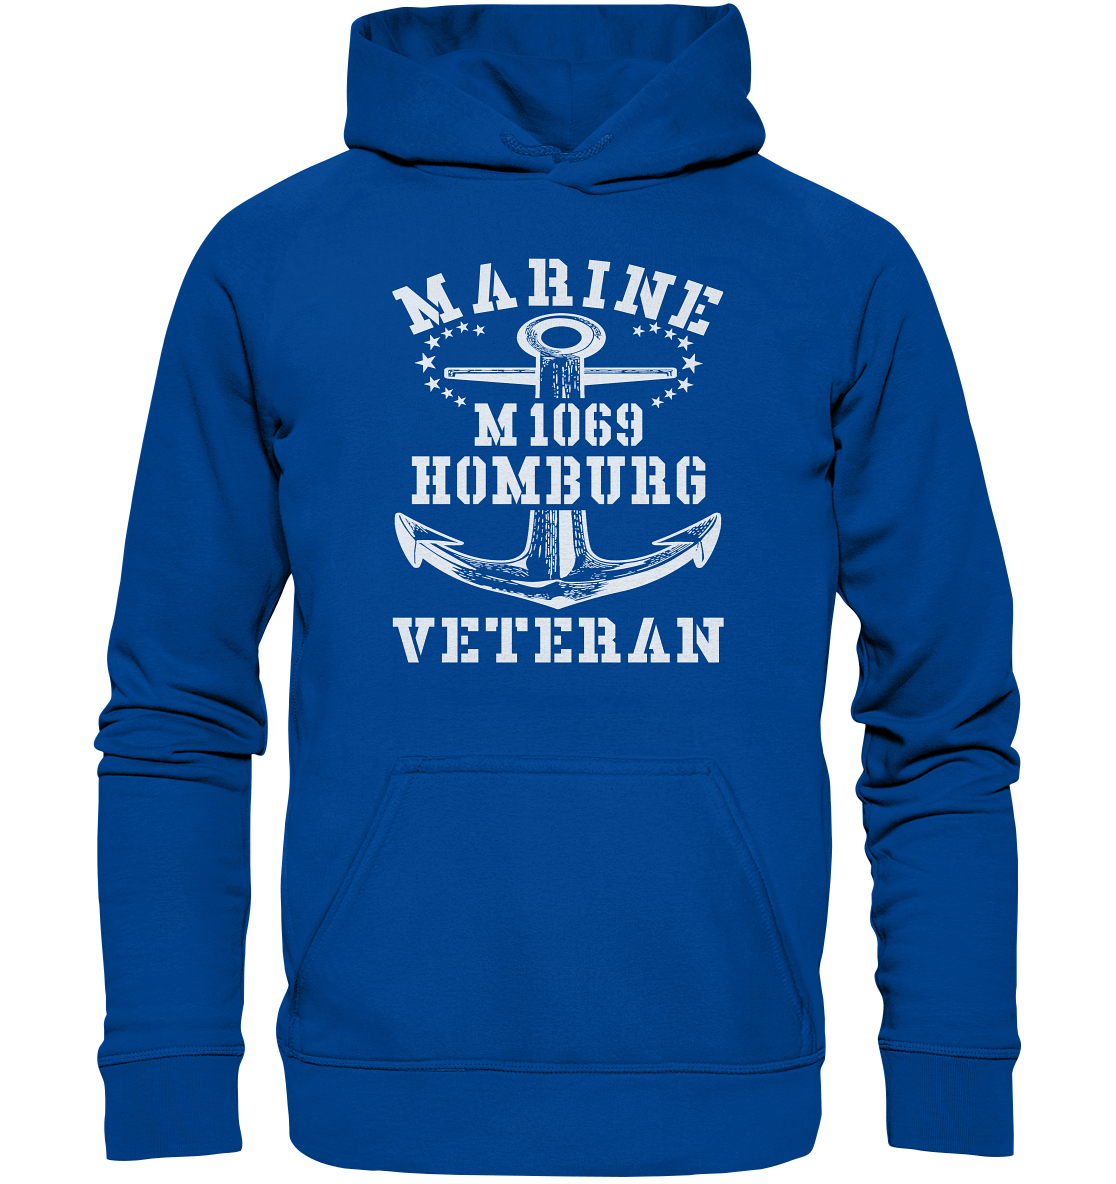 Mij.-Boot M1069 HOMBURG Marine Veteran - Basic Unisex Hoodie